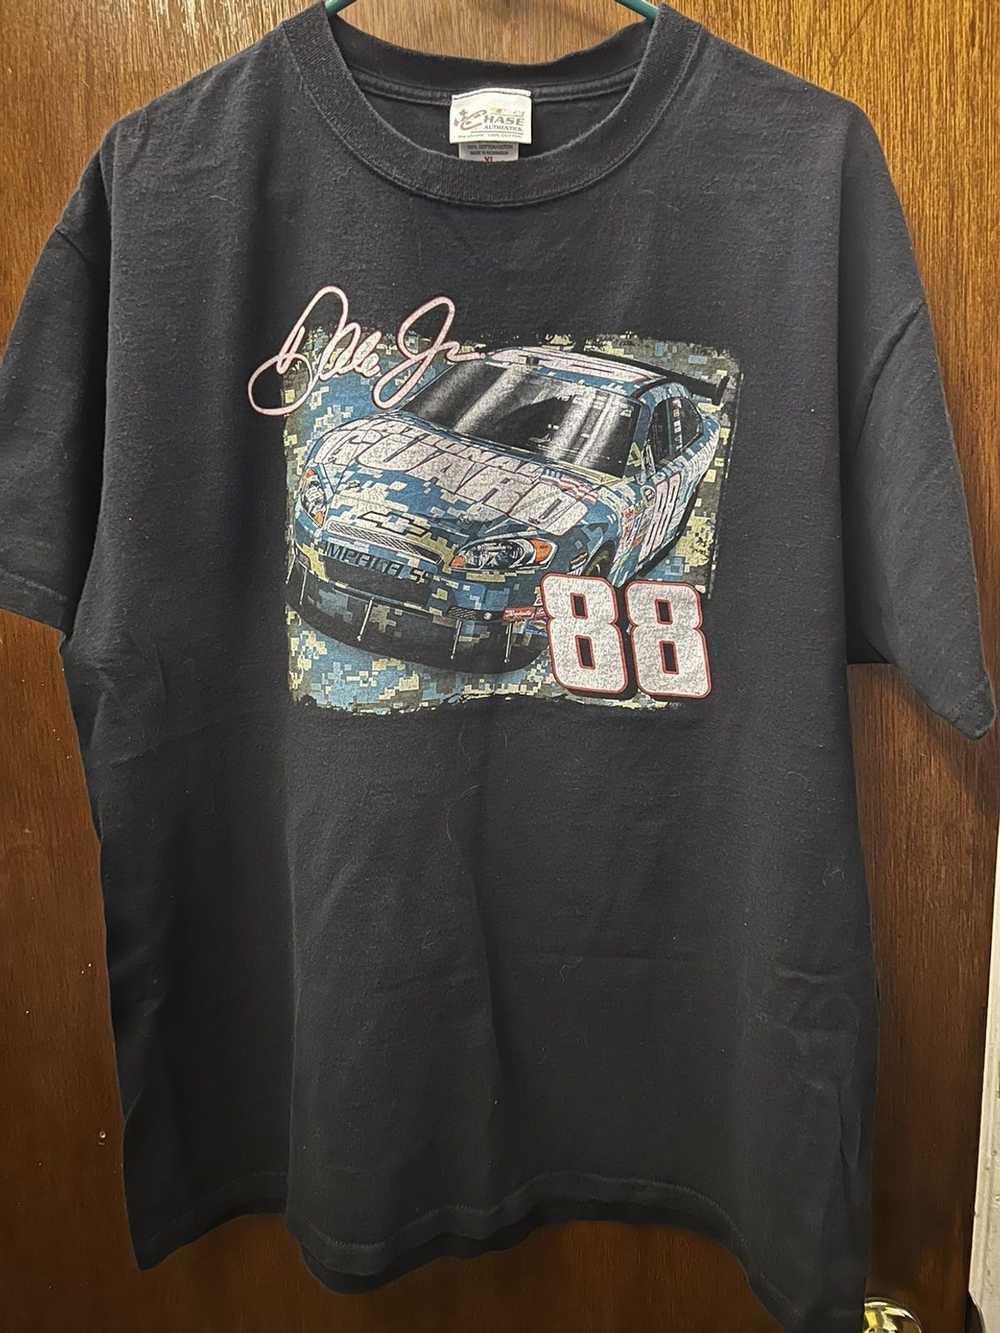 NASCAR Vintage nascar t shirt - image 1